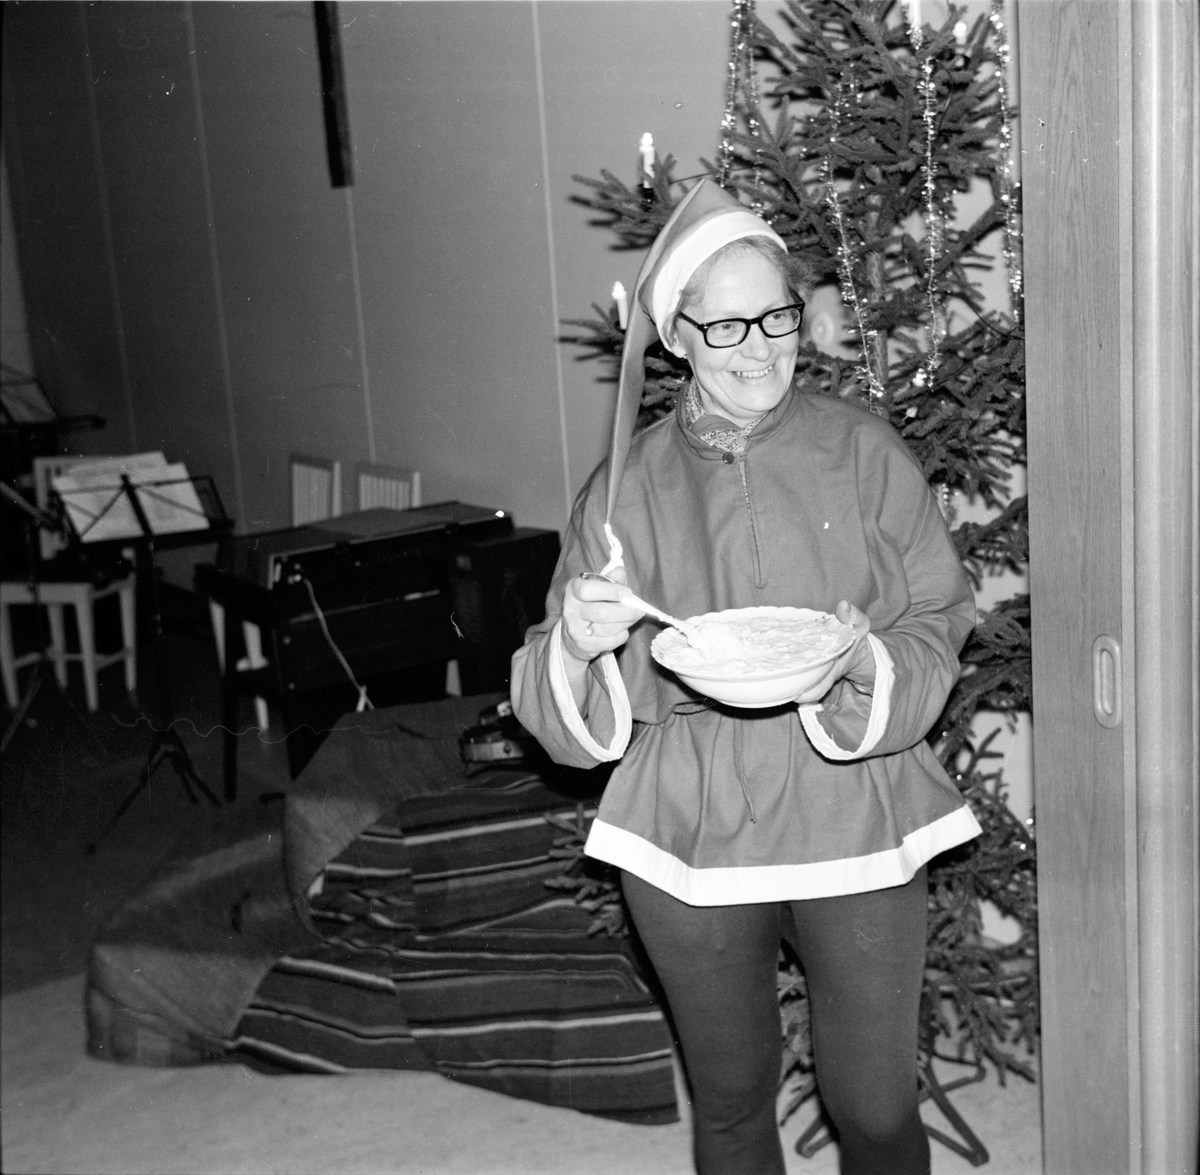 Arbrå, Astrid Häger.
Grötfesten i sockenstugan,
Januari 1969